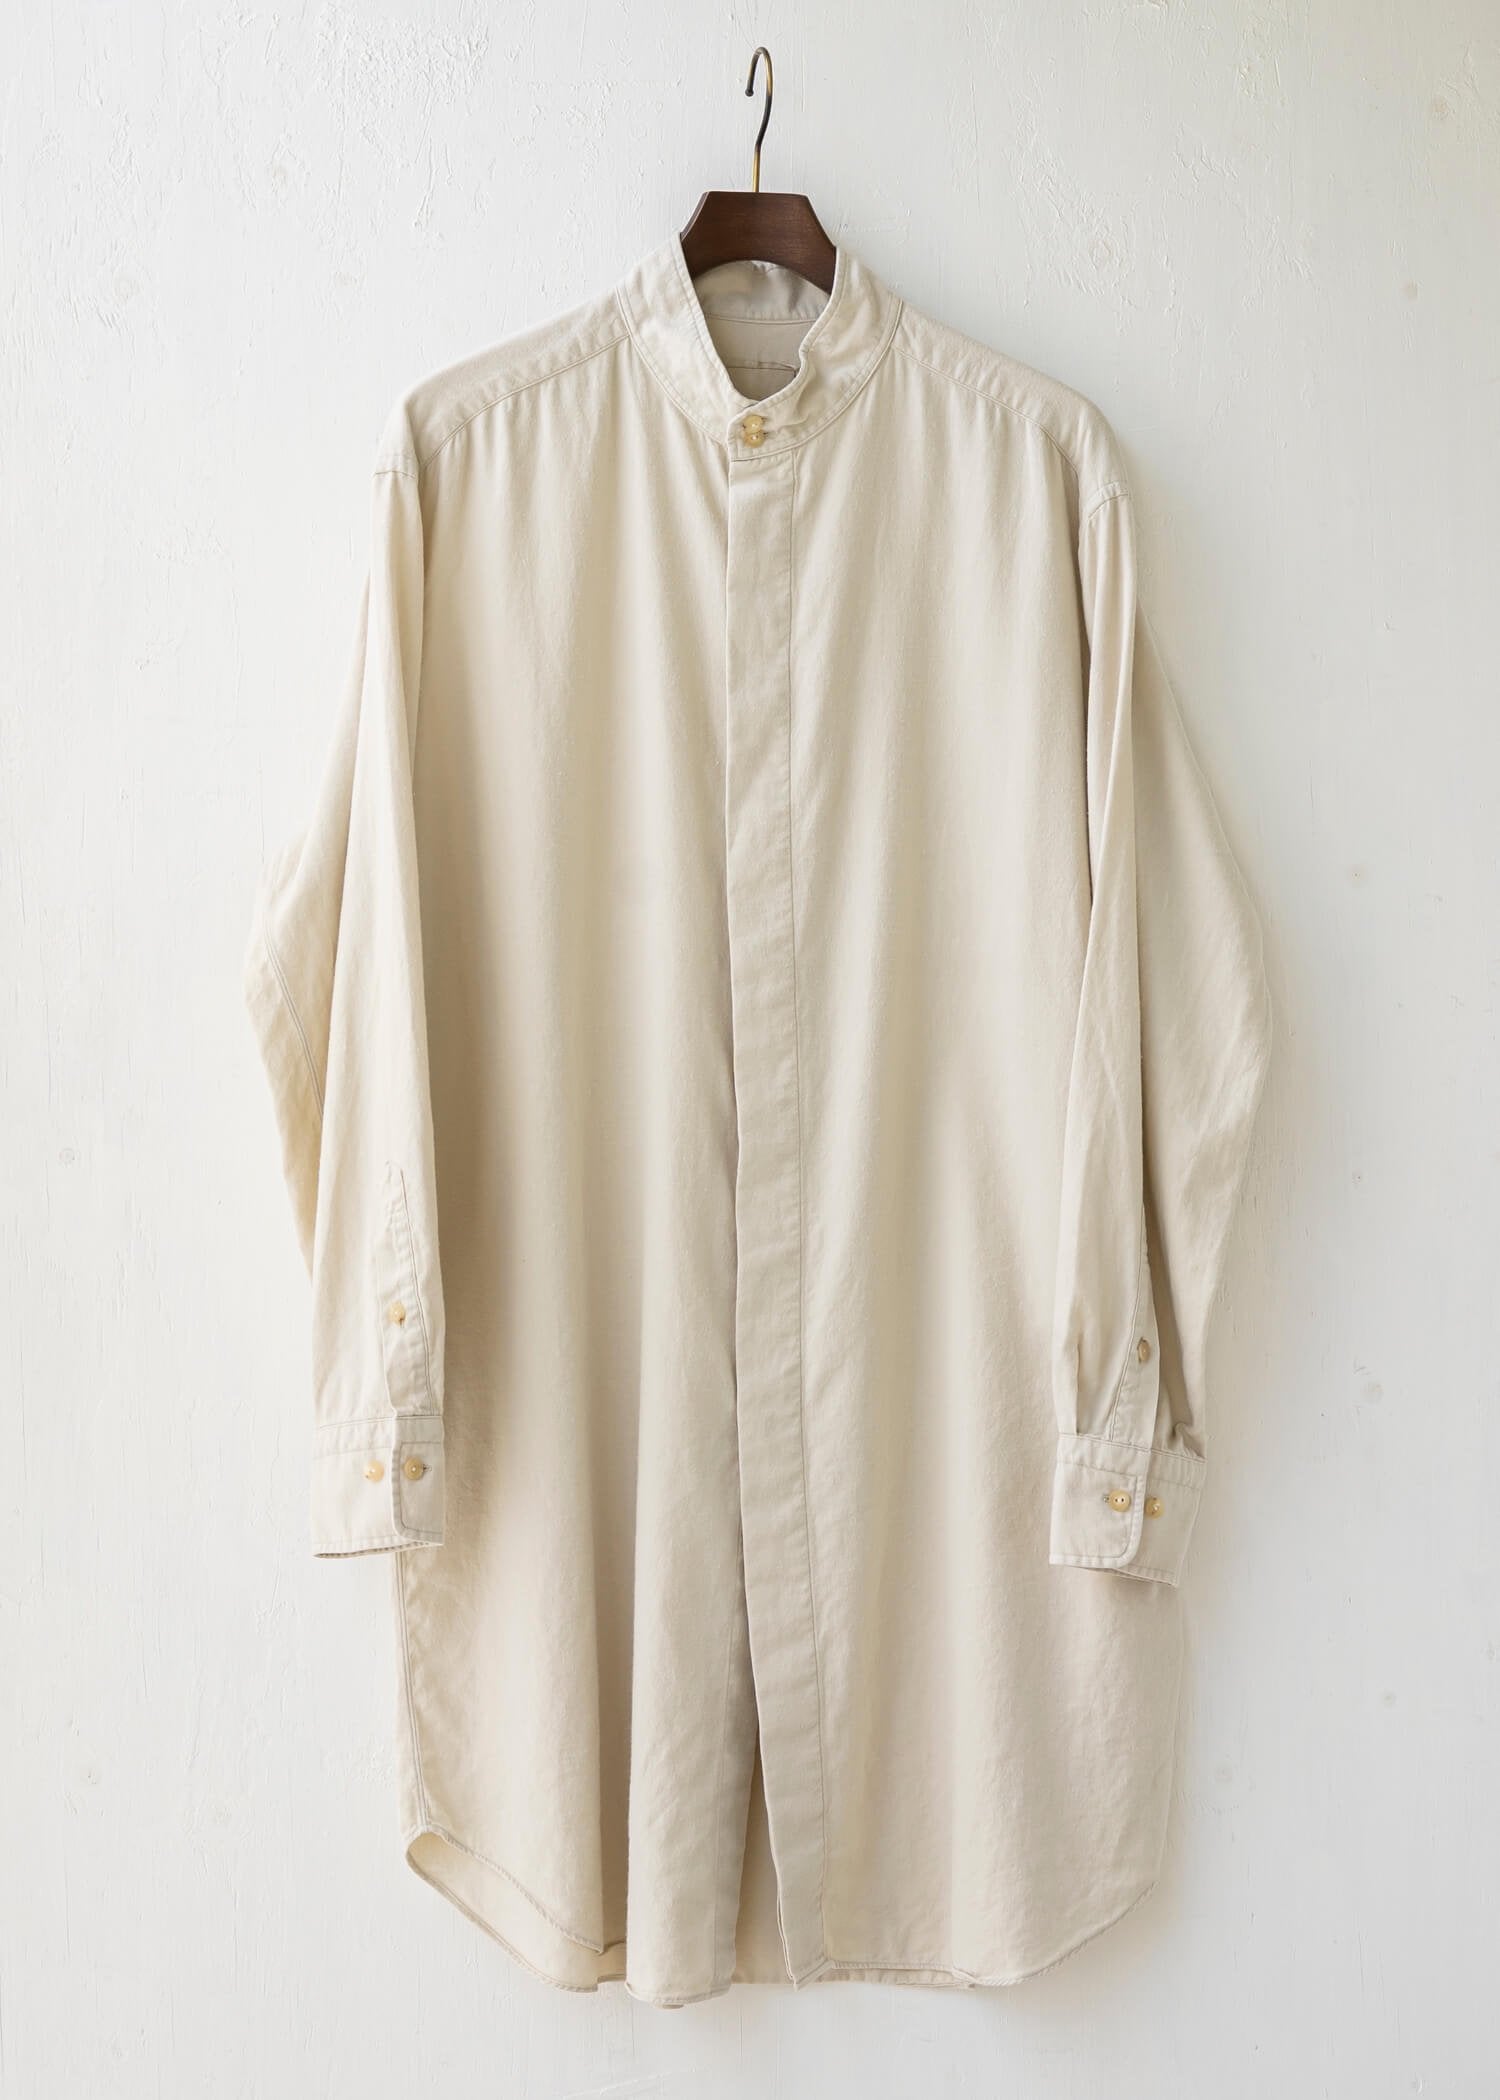 ZIIIN / "ANGO" 硫化染料 拉绒棉长衬衫 / KINARI